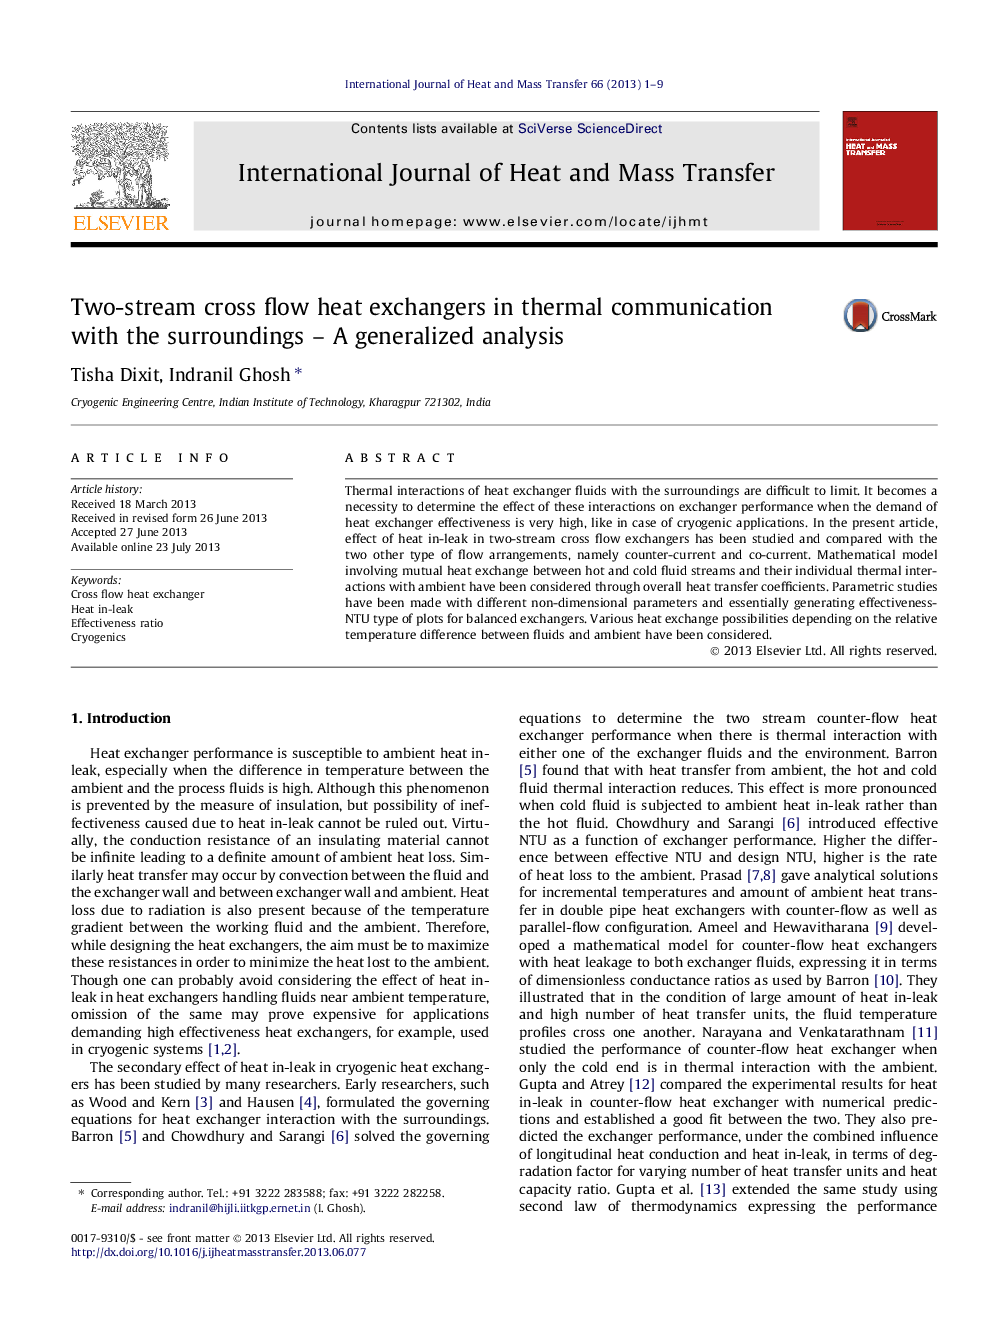 مبدل های حرارتی جریان متقاطع دو طرفه در ارتباطات حرارتی با محیط اطراف - یک تحلیل عمومی 